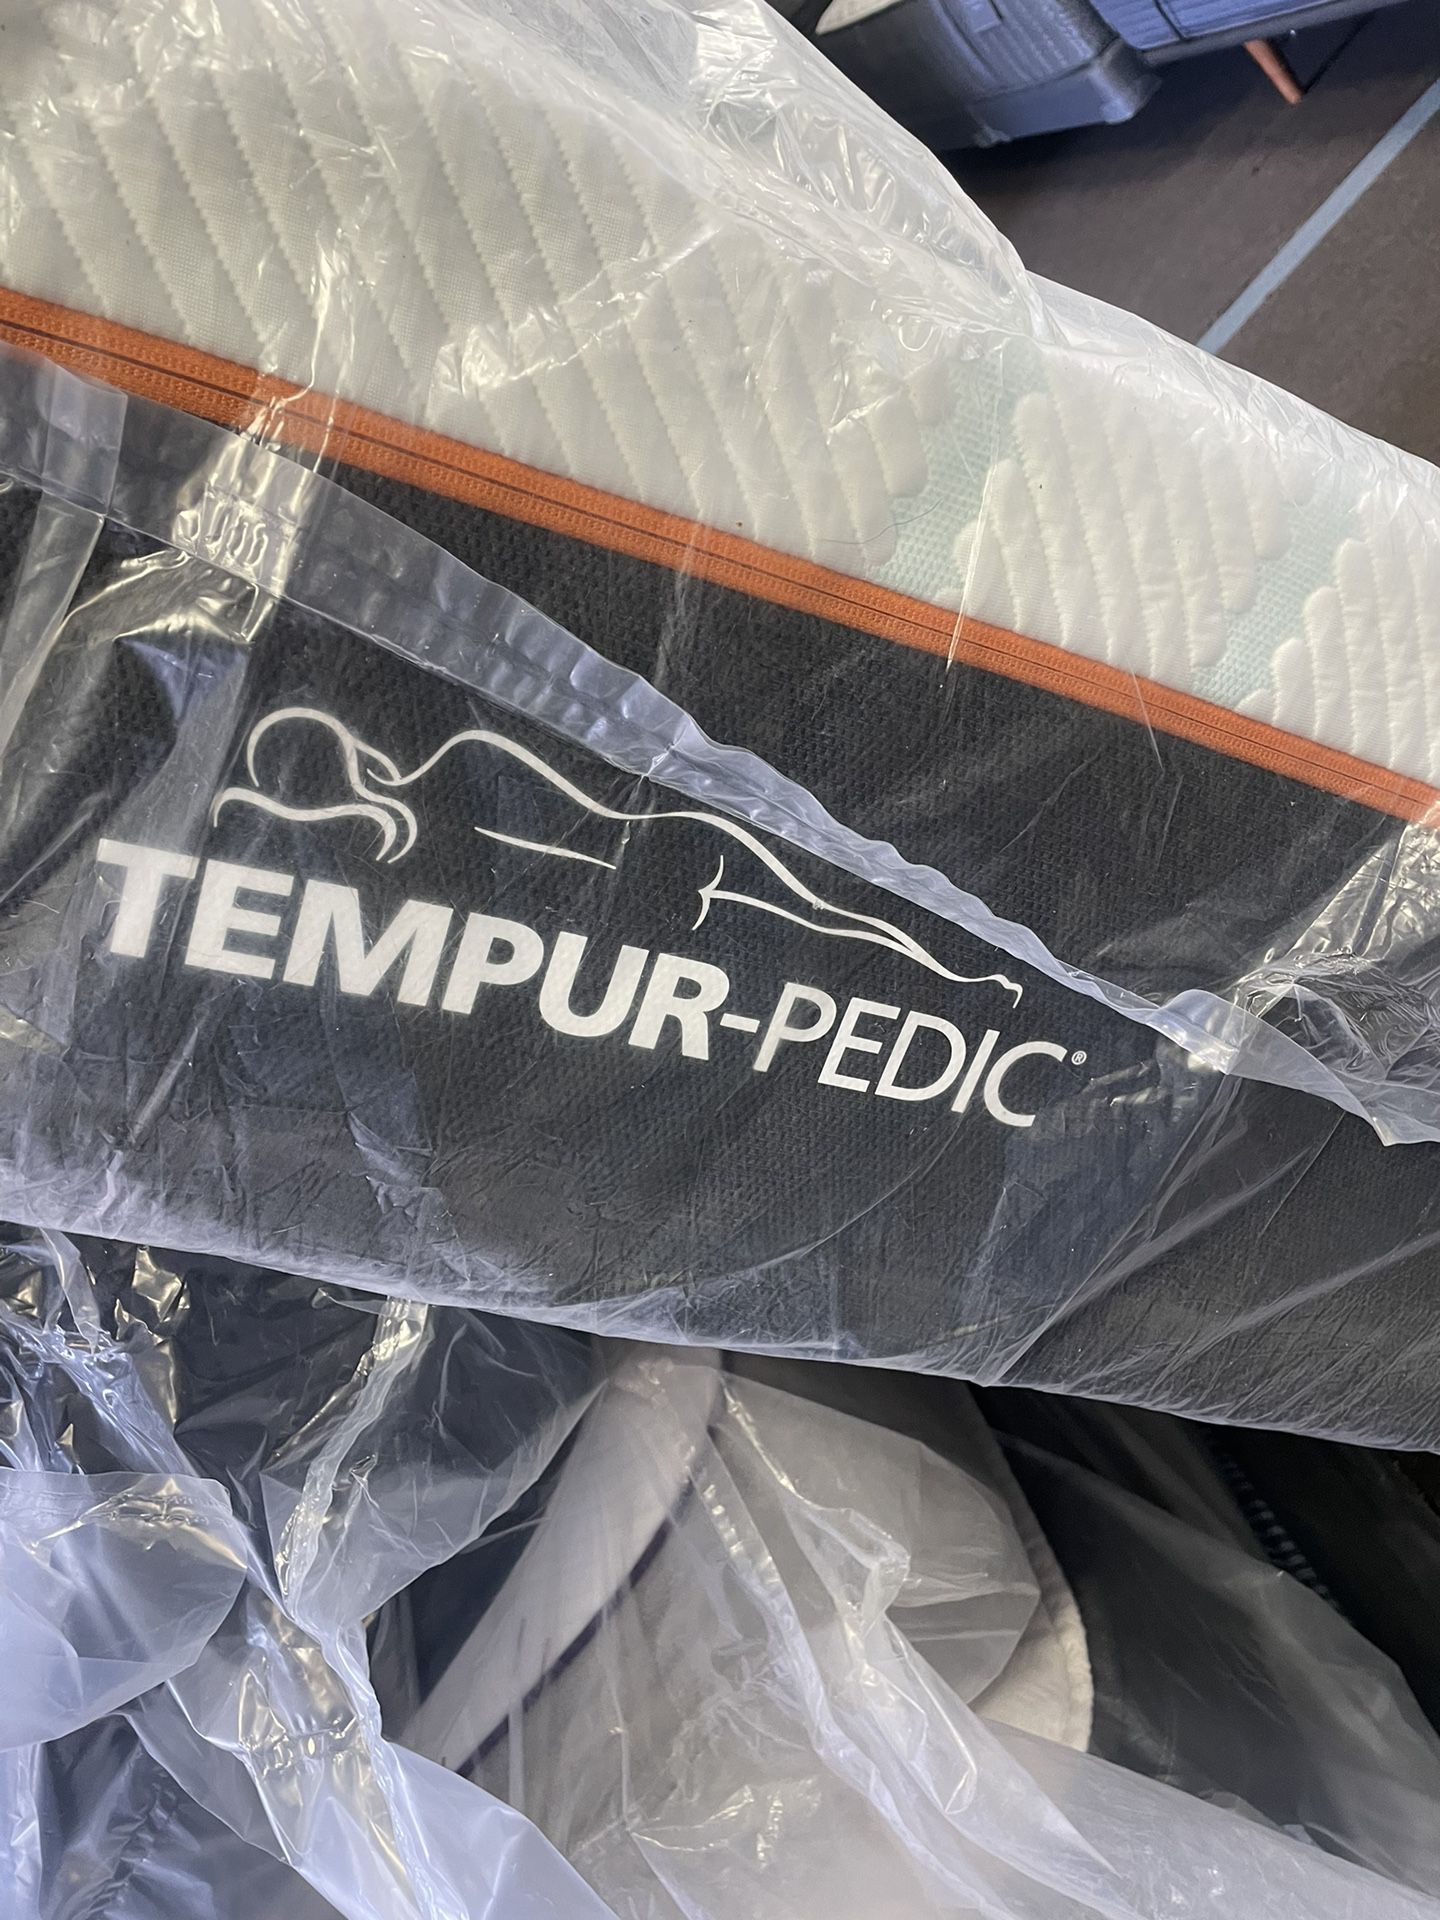 Tempurpedic Pro Adapt Firm Queen Mattress